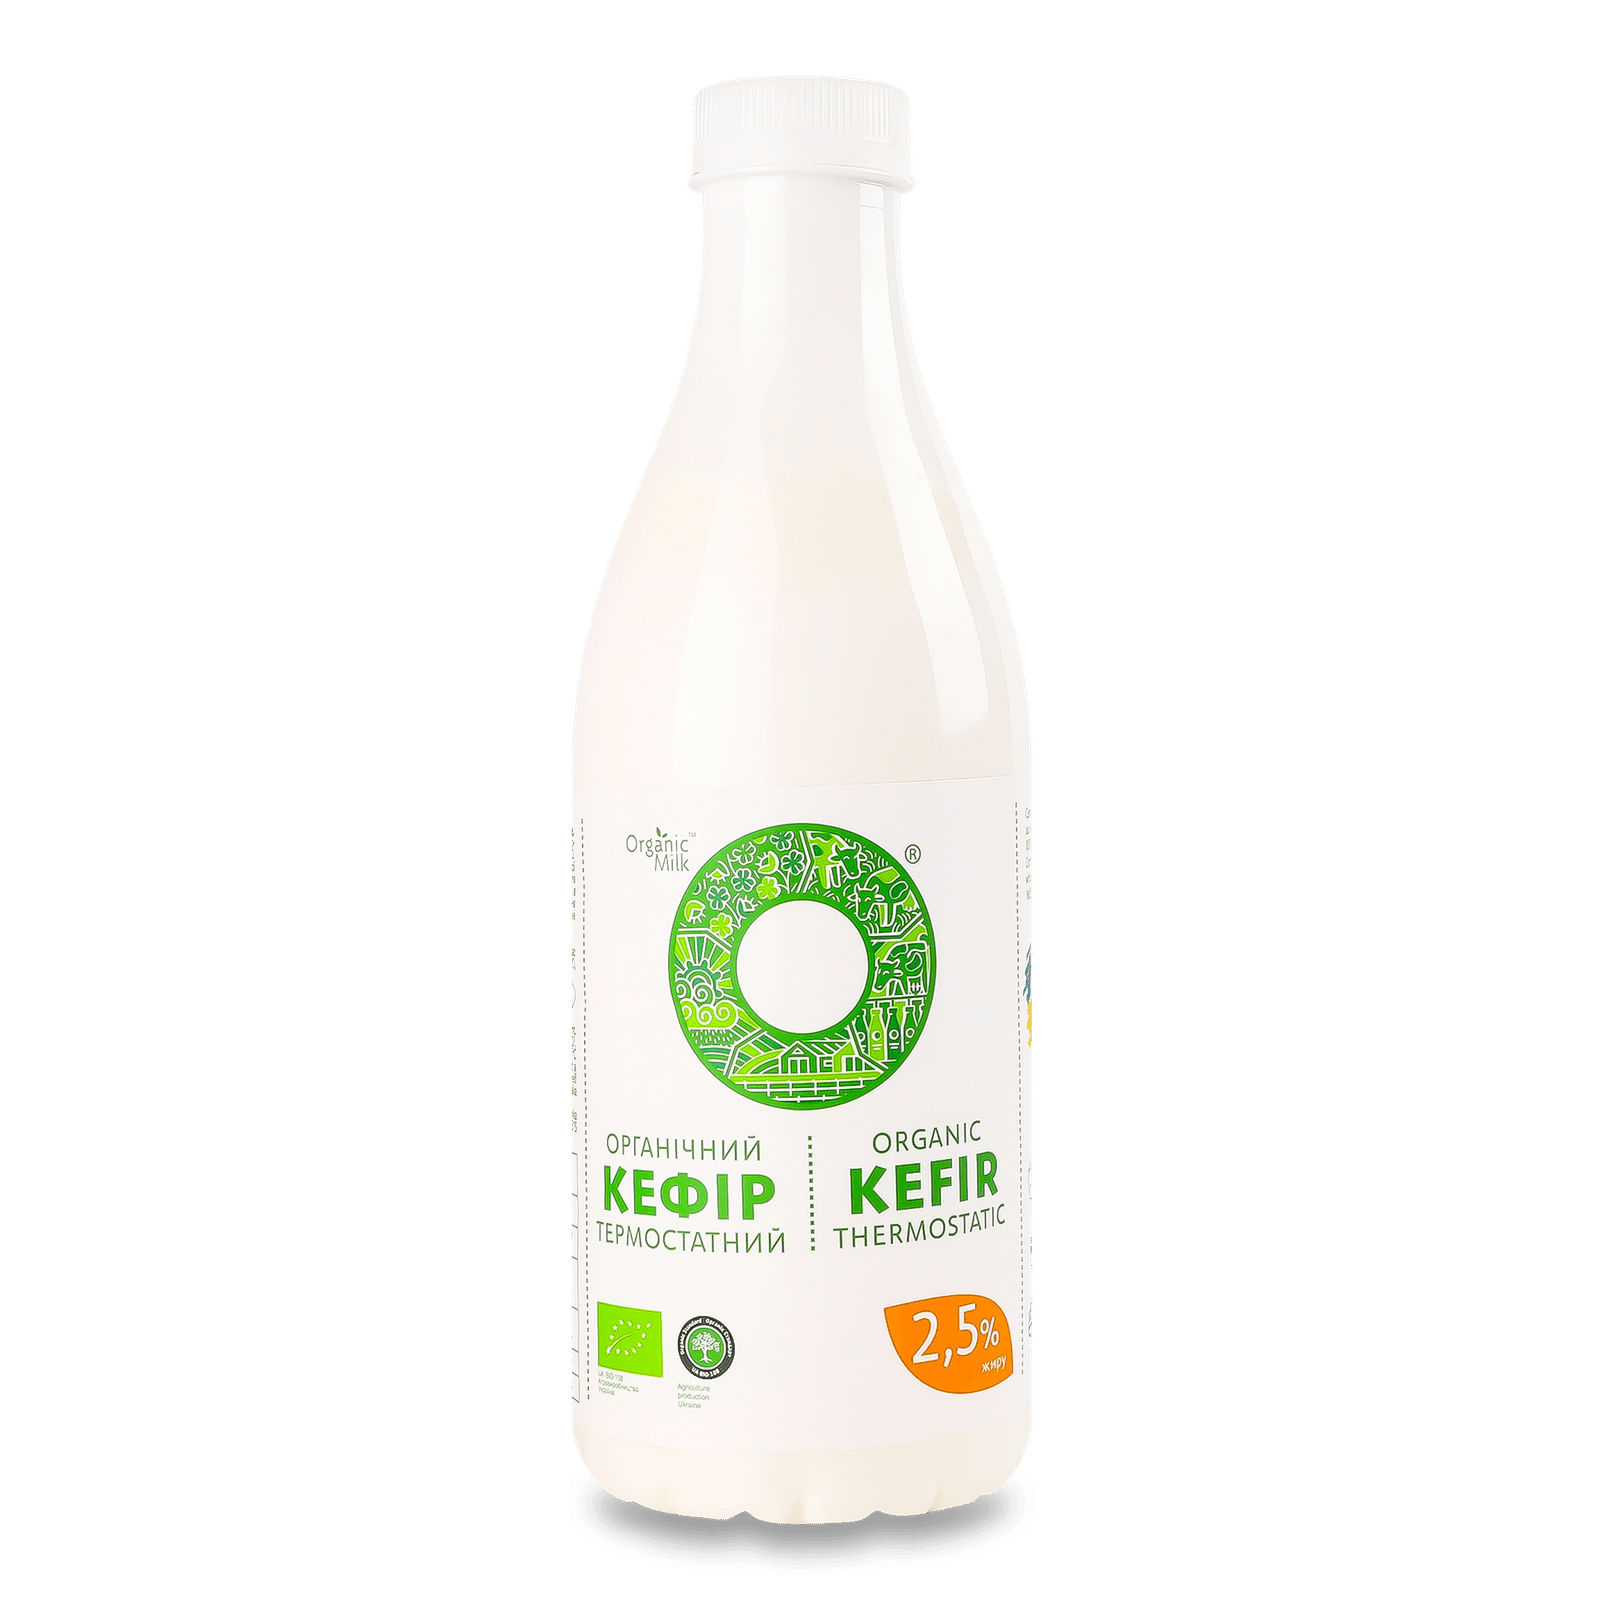 Кефір Organic Milk термостатний органічний 2,5% - 1